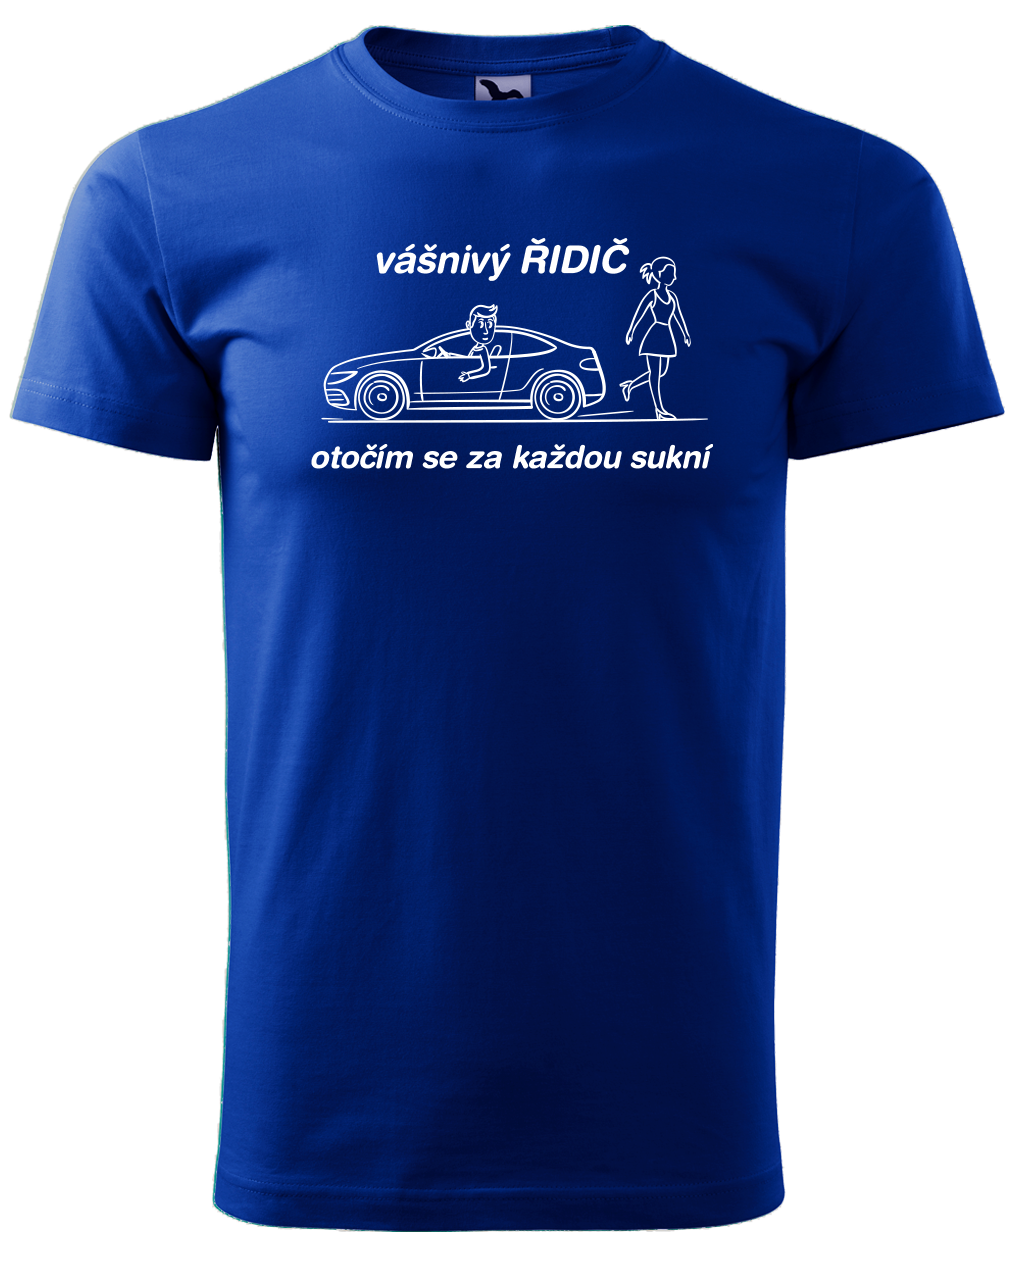 Vtipné tričko pro řidiče - Vášnivý řidič Velikost: XL, Barva: Královská modrá (05)